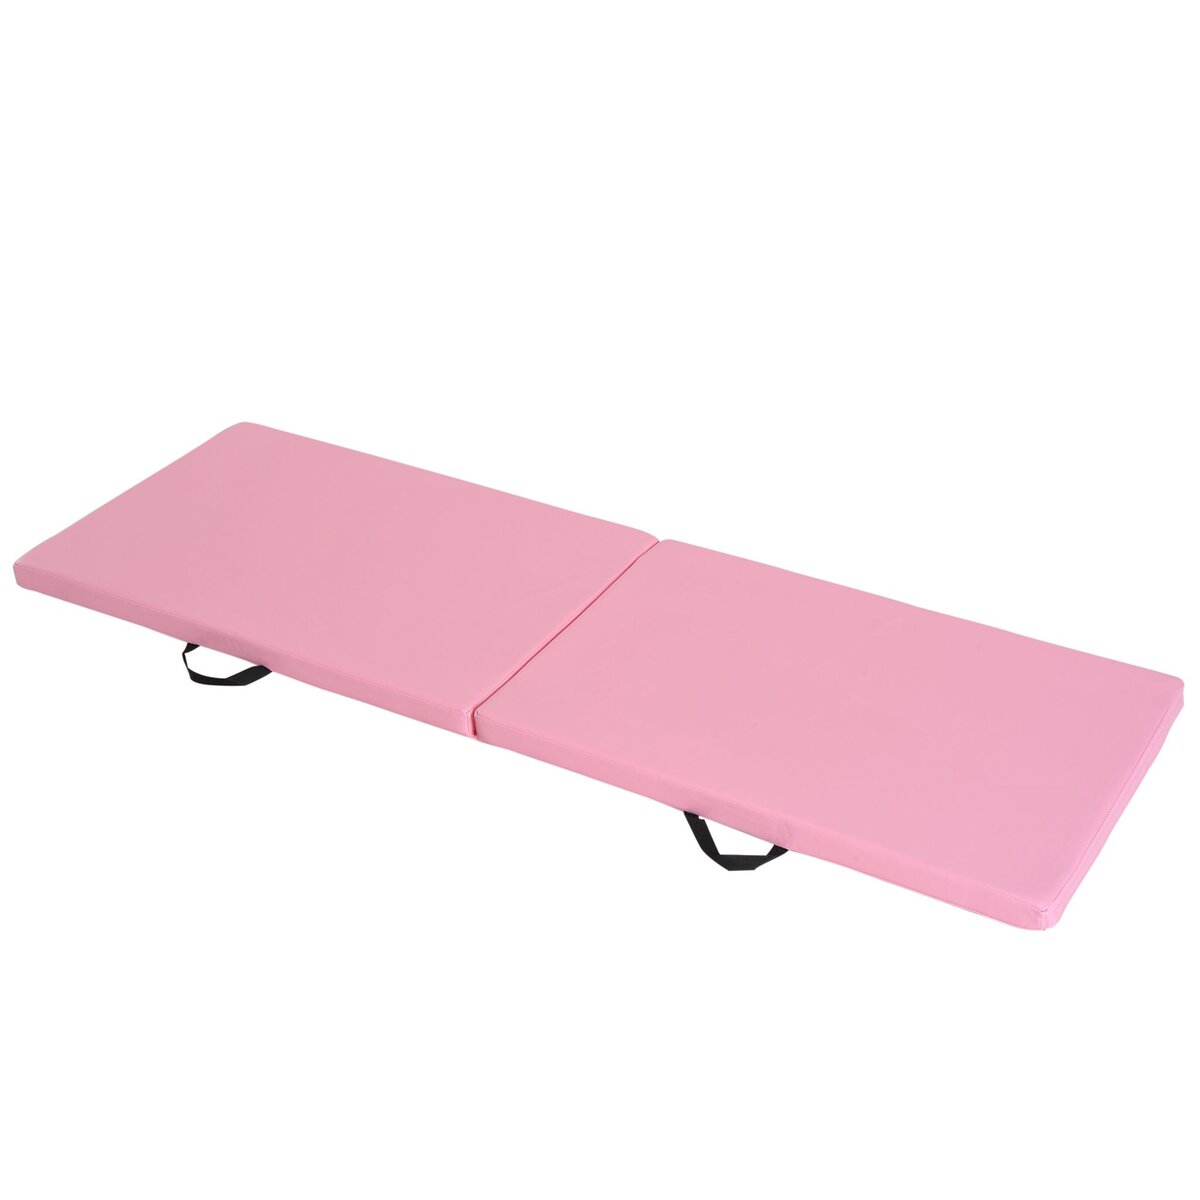 HOMCOM Tapis de gymnastique yoga pilates fitness pliable portable grand  confort 180L x 60l x 5H cm revêtement synthétique rose pas cher 